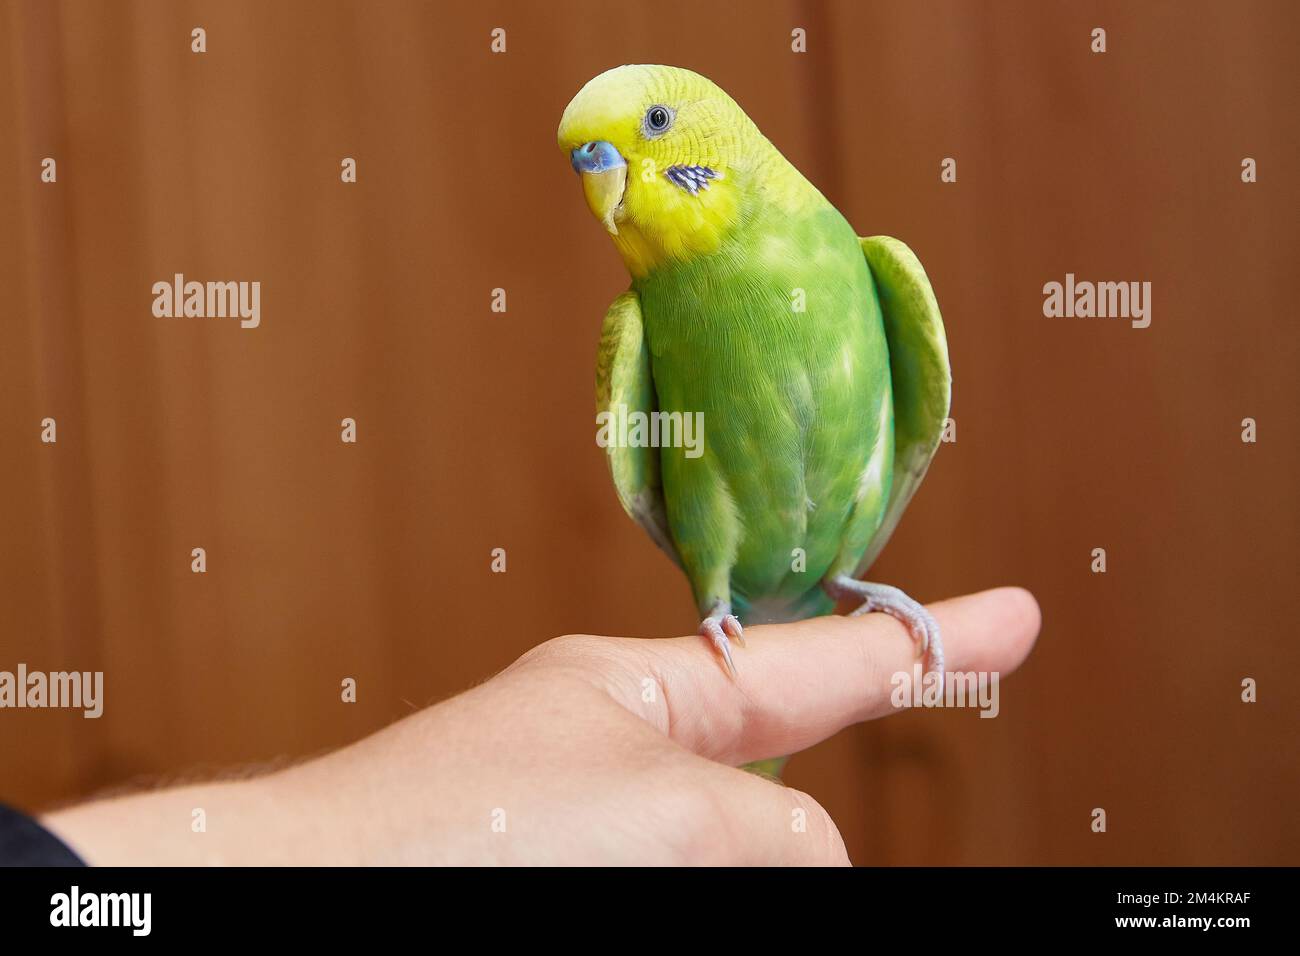 Joli parakeet jaune et vert bourgegerigar assis sur un doigt avec un intérieur de maison. Copier l'espace. gros plan. Banque D'Images